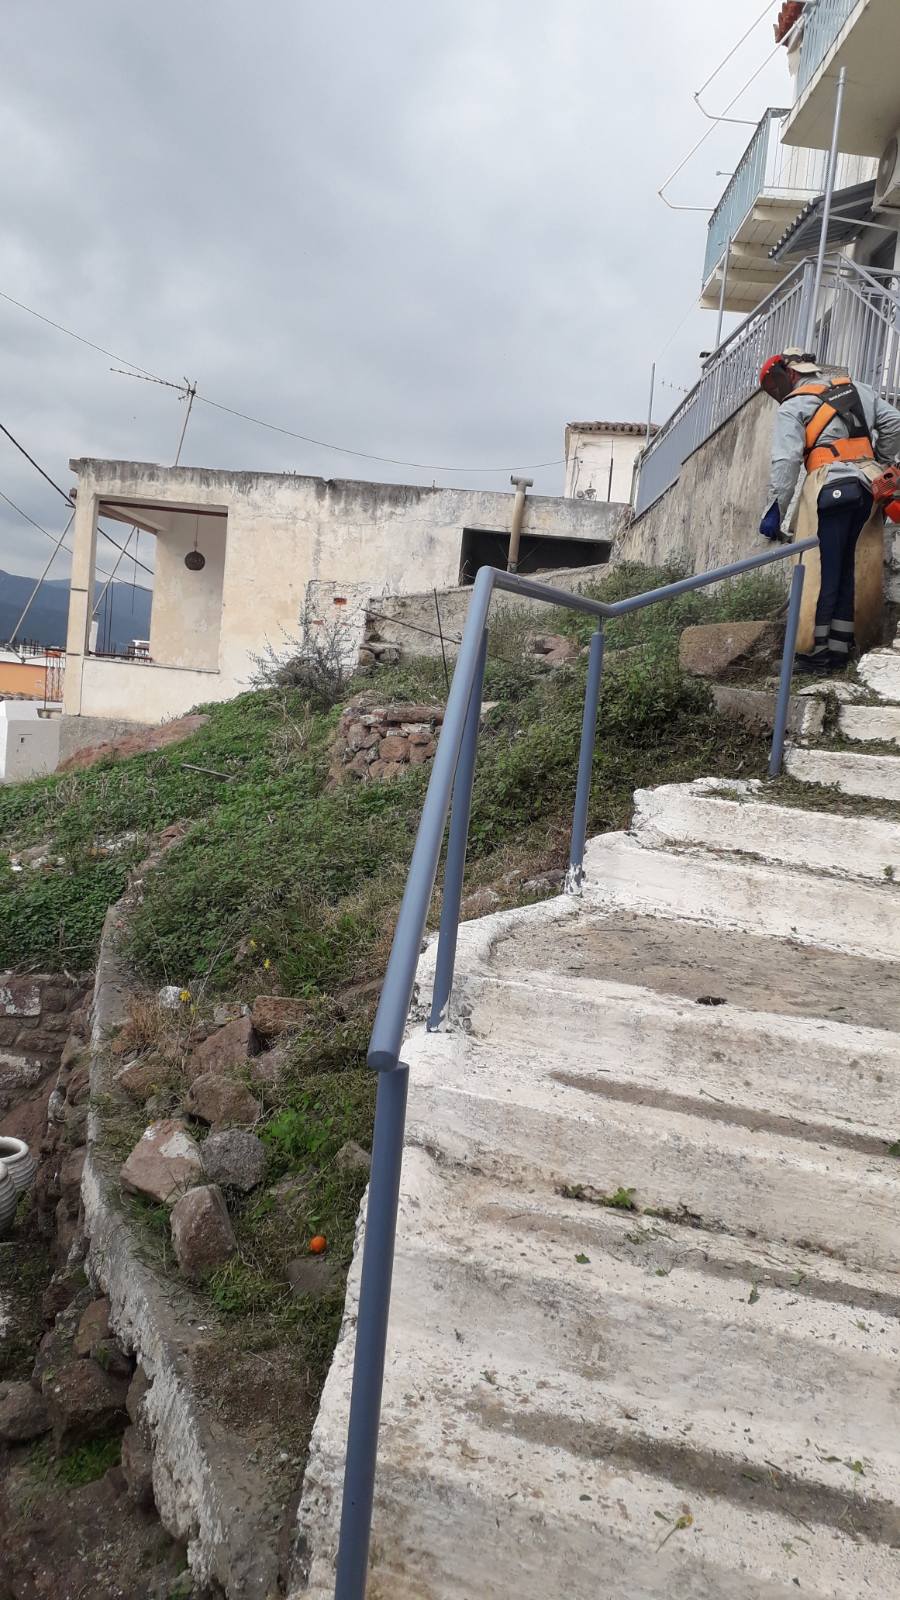 Νέα καινοτομία στον τομέα καθαριότητας από τον
Δήμο Πόρου: «Γενική Καθαριότητα» μια φορά την εβδομάδα σε διαφορετική περιοχή